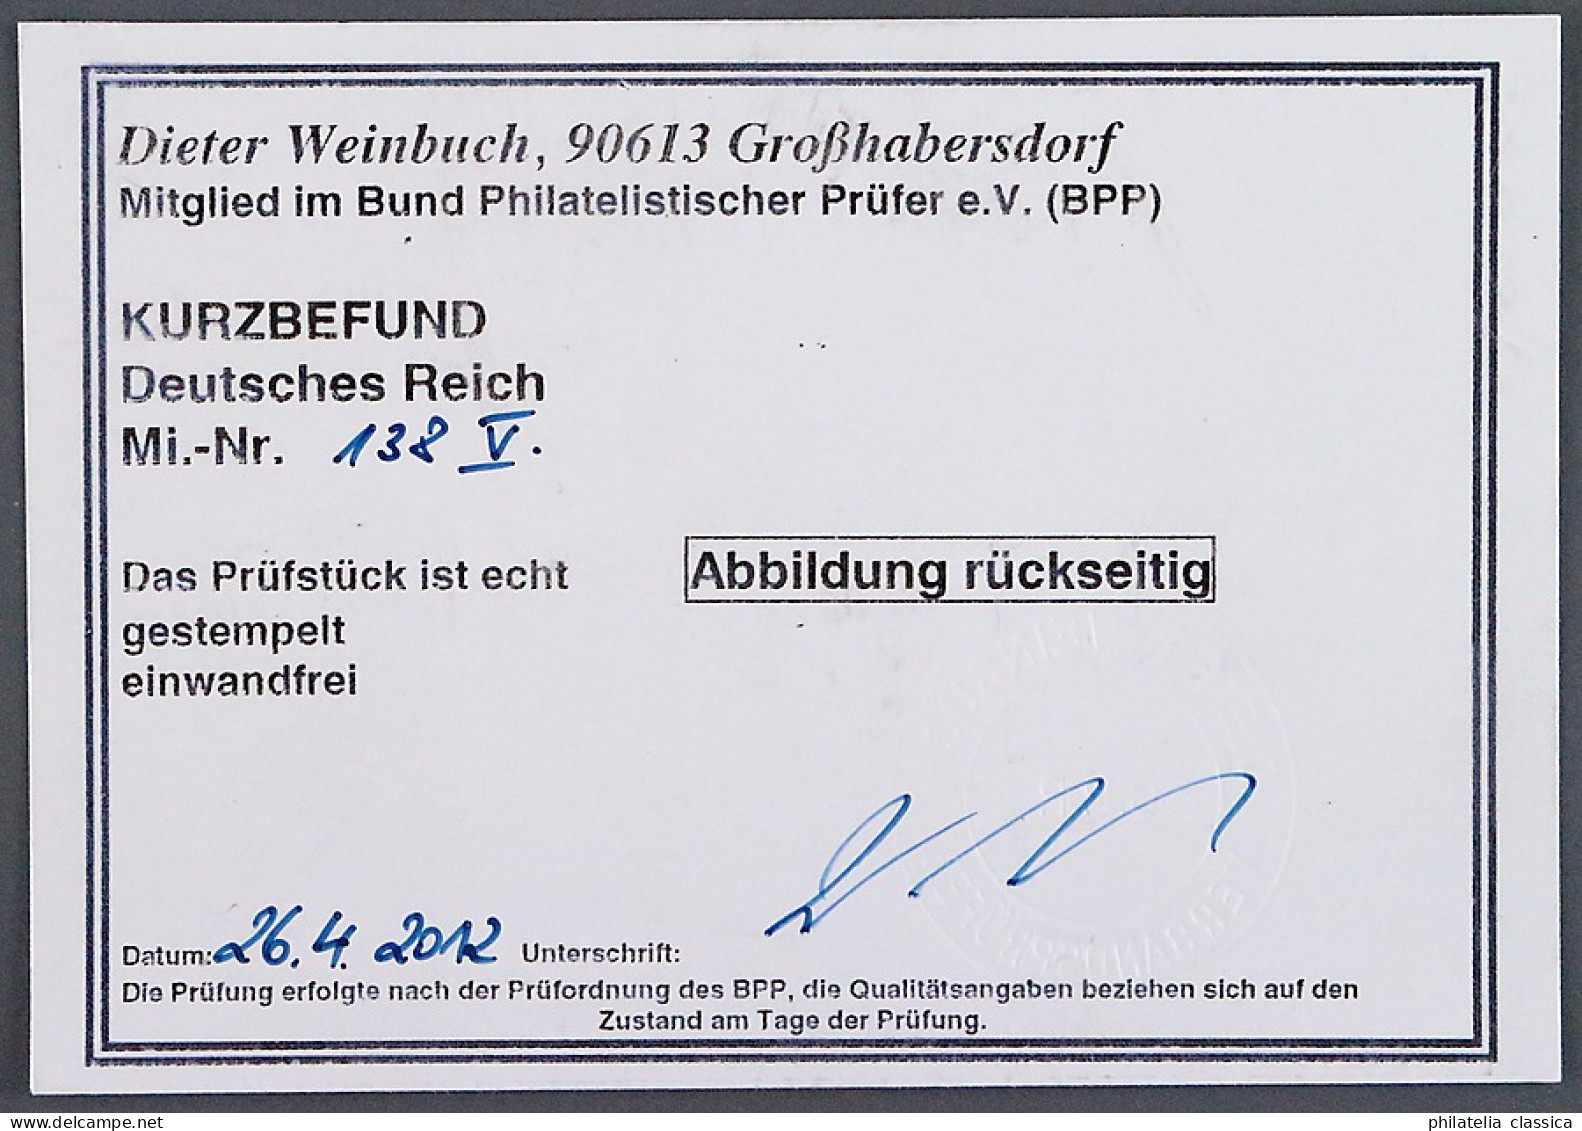 Dt. Reich  138 PF V,  PLATTENFEHLER  "Apostroph", Gestempelt, Geprüft KW 200,- € - Gebraucht